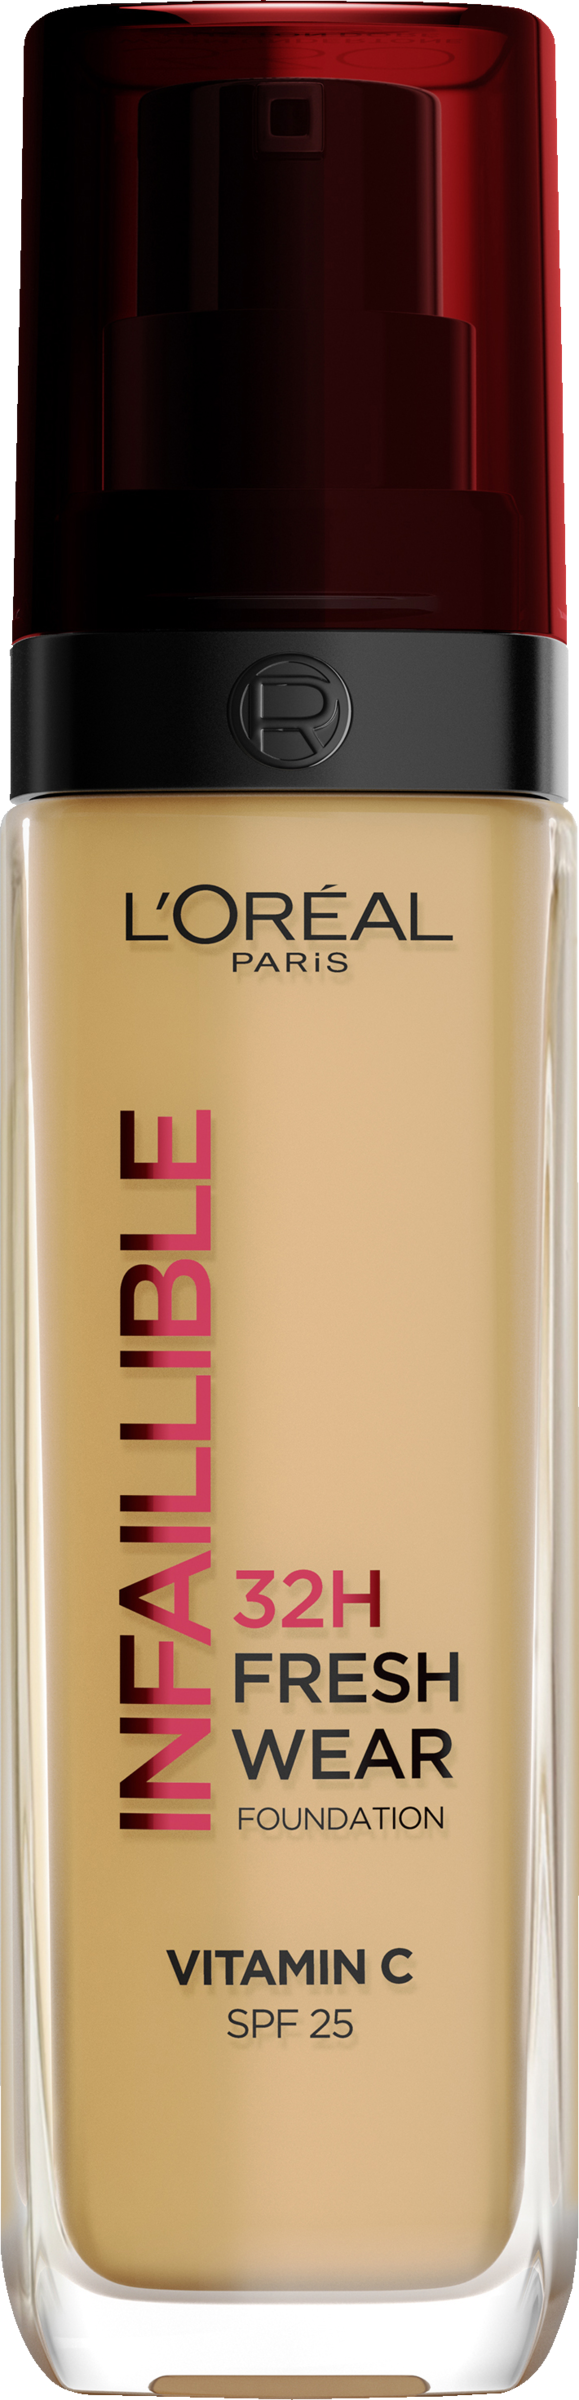 L’Oréal Paris Infaillible 32H Fresh Wear Make-up Nr. 315 LSF 25